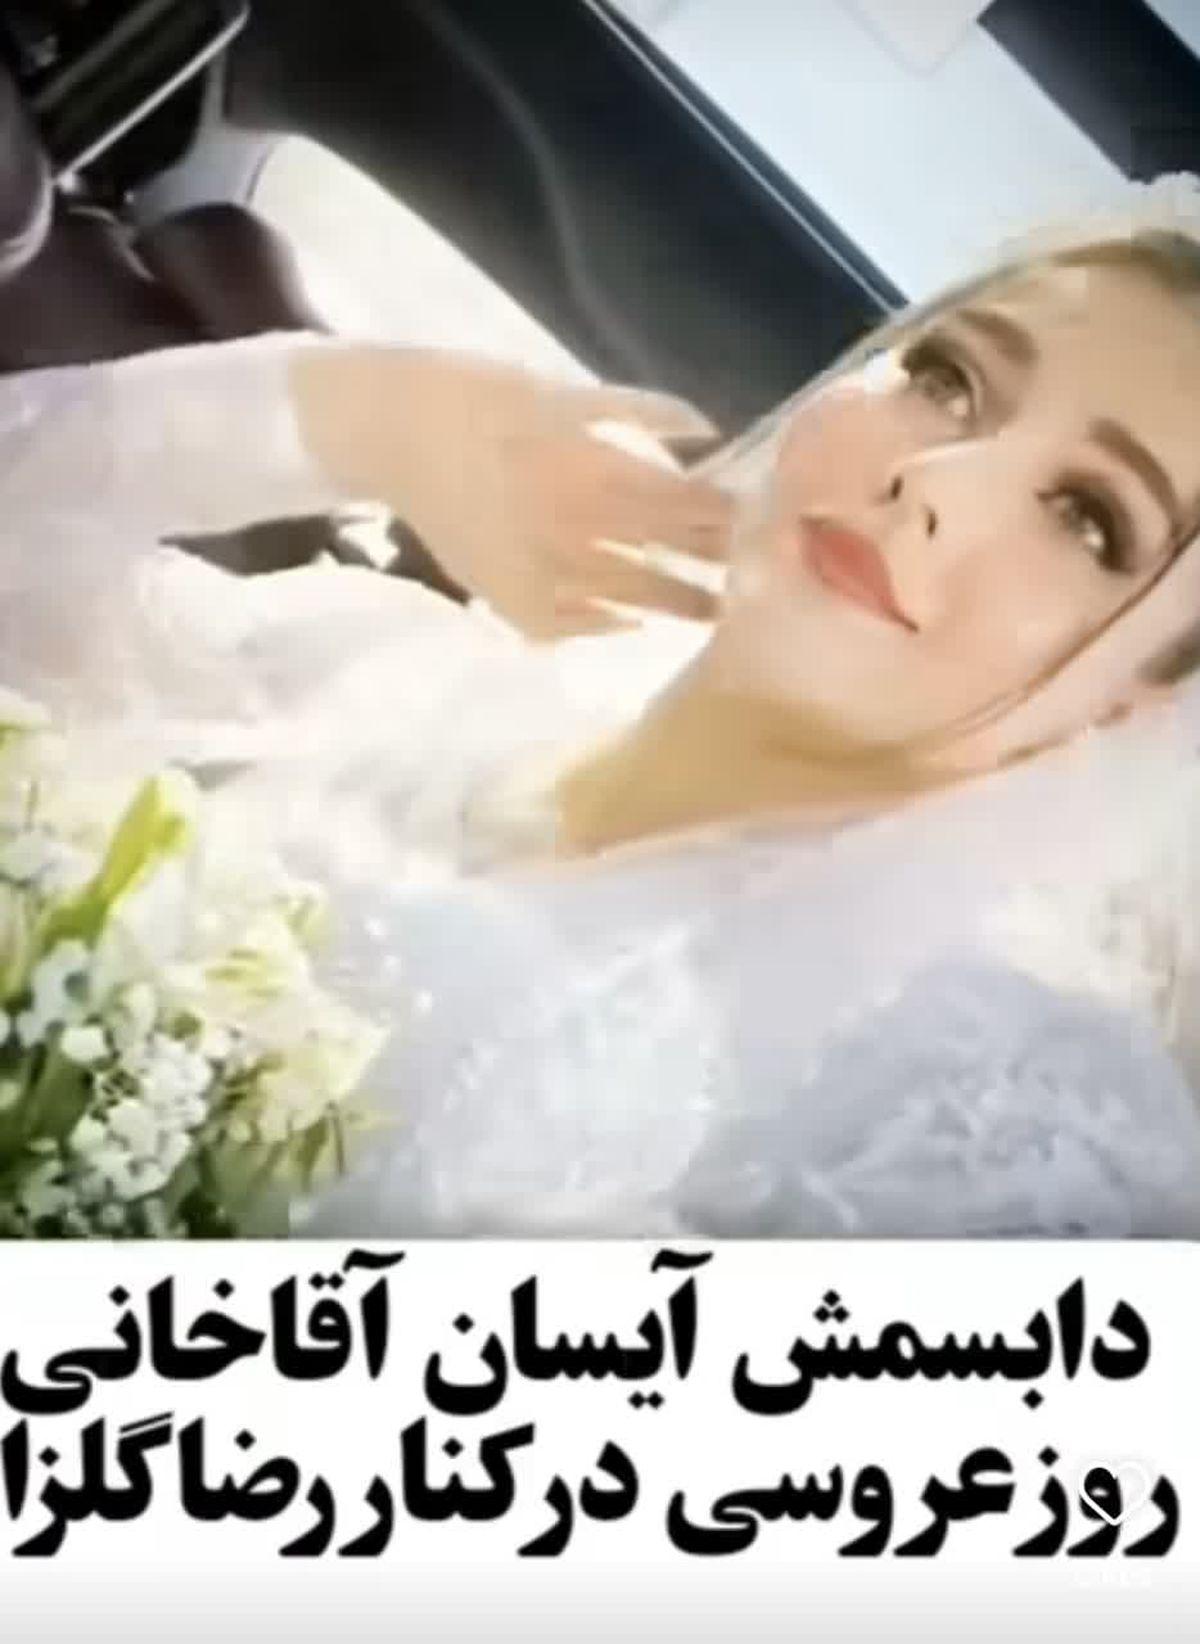 آیسان آقاخانی بالاخره عکس عروسی اش را منتشر کرد | دابسمش آیسان و محمدرضا گلزار در خودروی میلیاردی